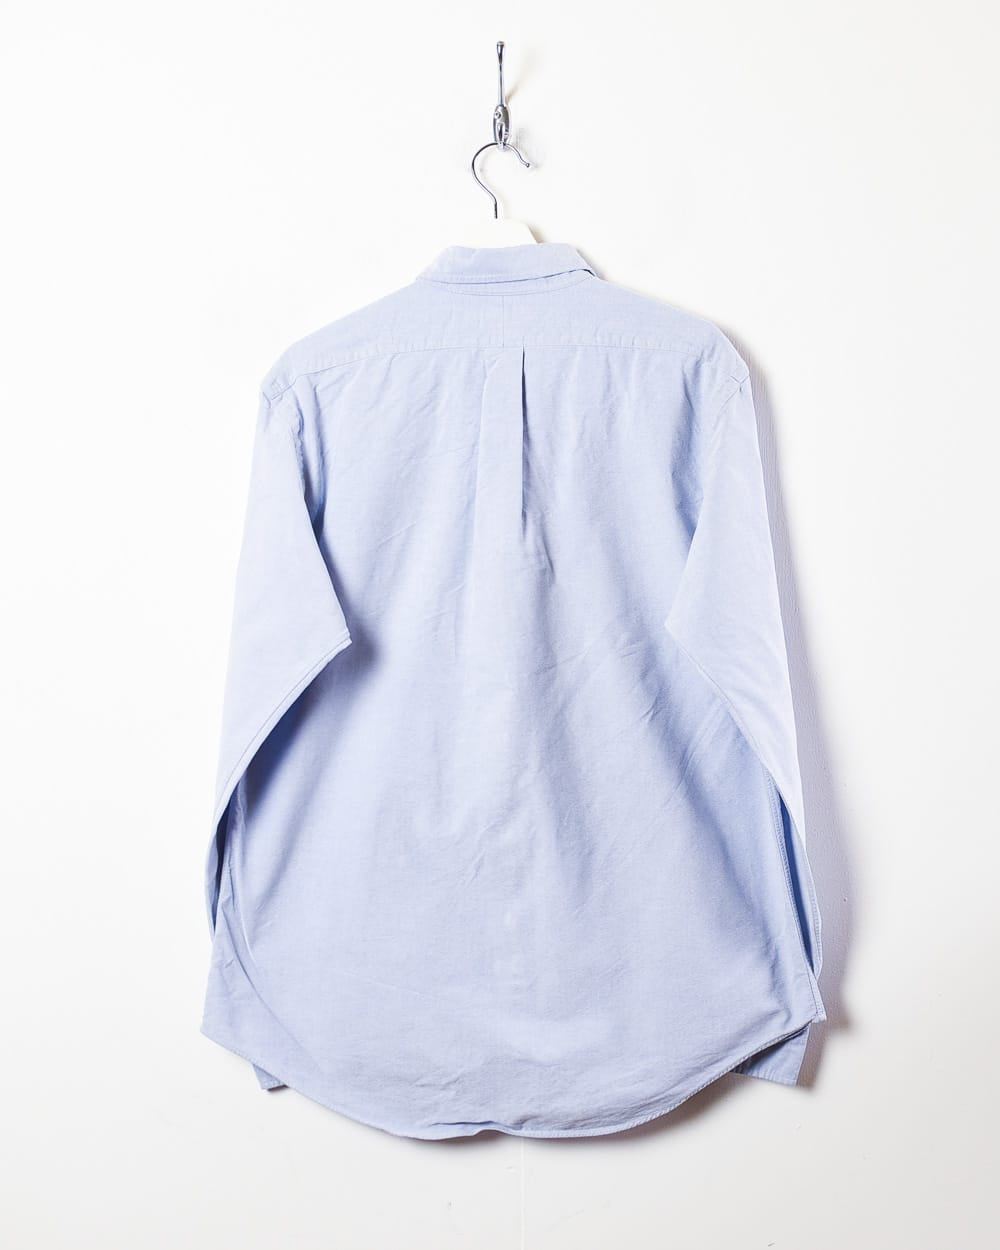 BabyBlue Ralph Lauren Shirt - Large